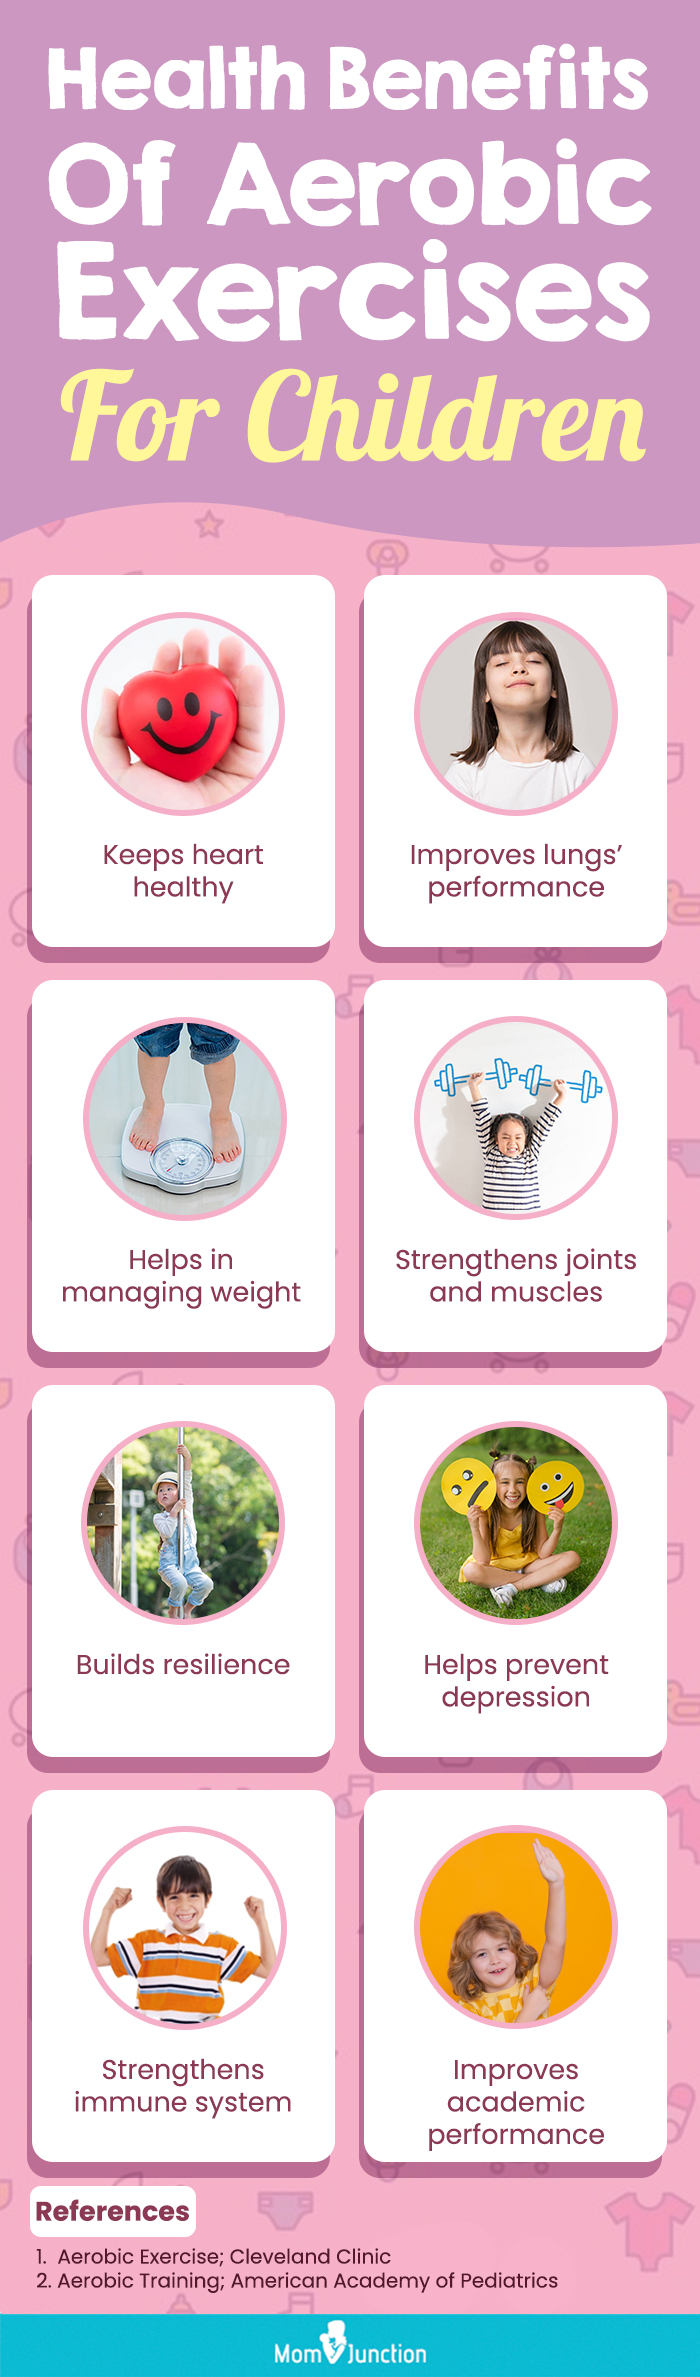 有氧运动对儿童健康的益处(信息图)